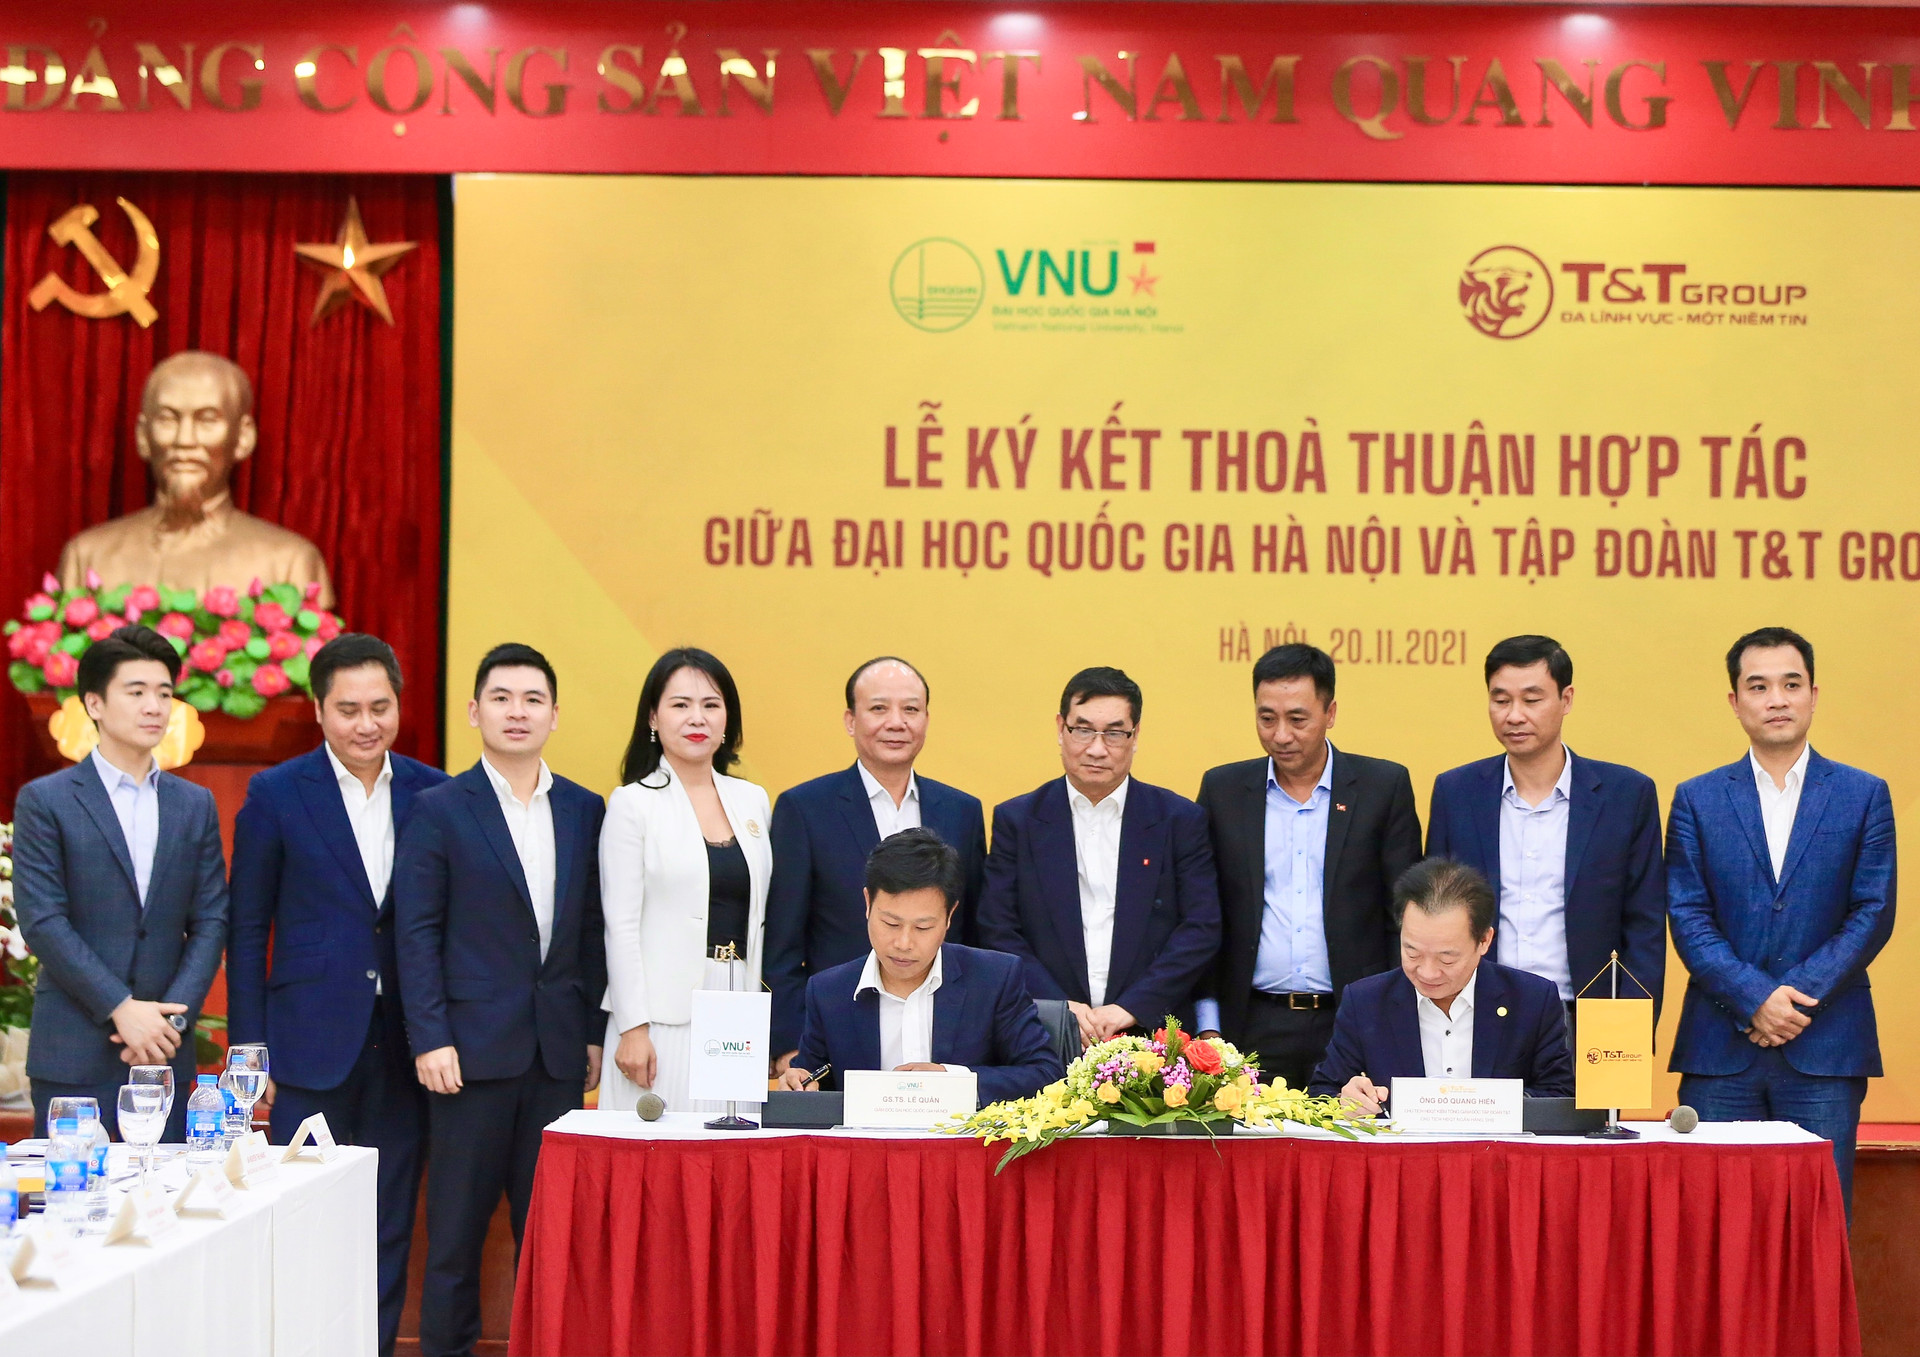 Chủ tịch HĐQT kiêm Tổng Giám đốc T&T Group Đỗ Quang Hiển và GS.TS Lê Quân, Giám đốc ĐHQHN ký kết Thỏa thuận hợp tác chiến lược